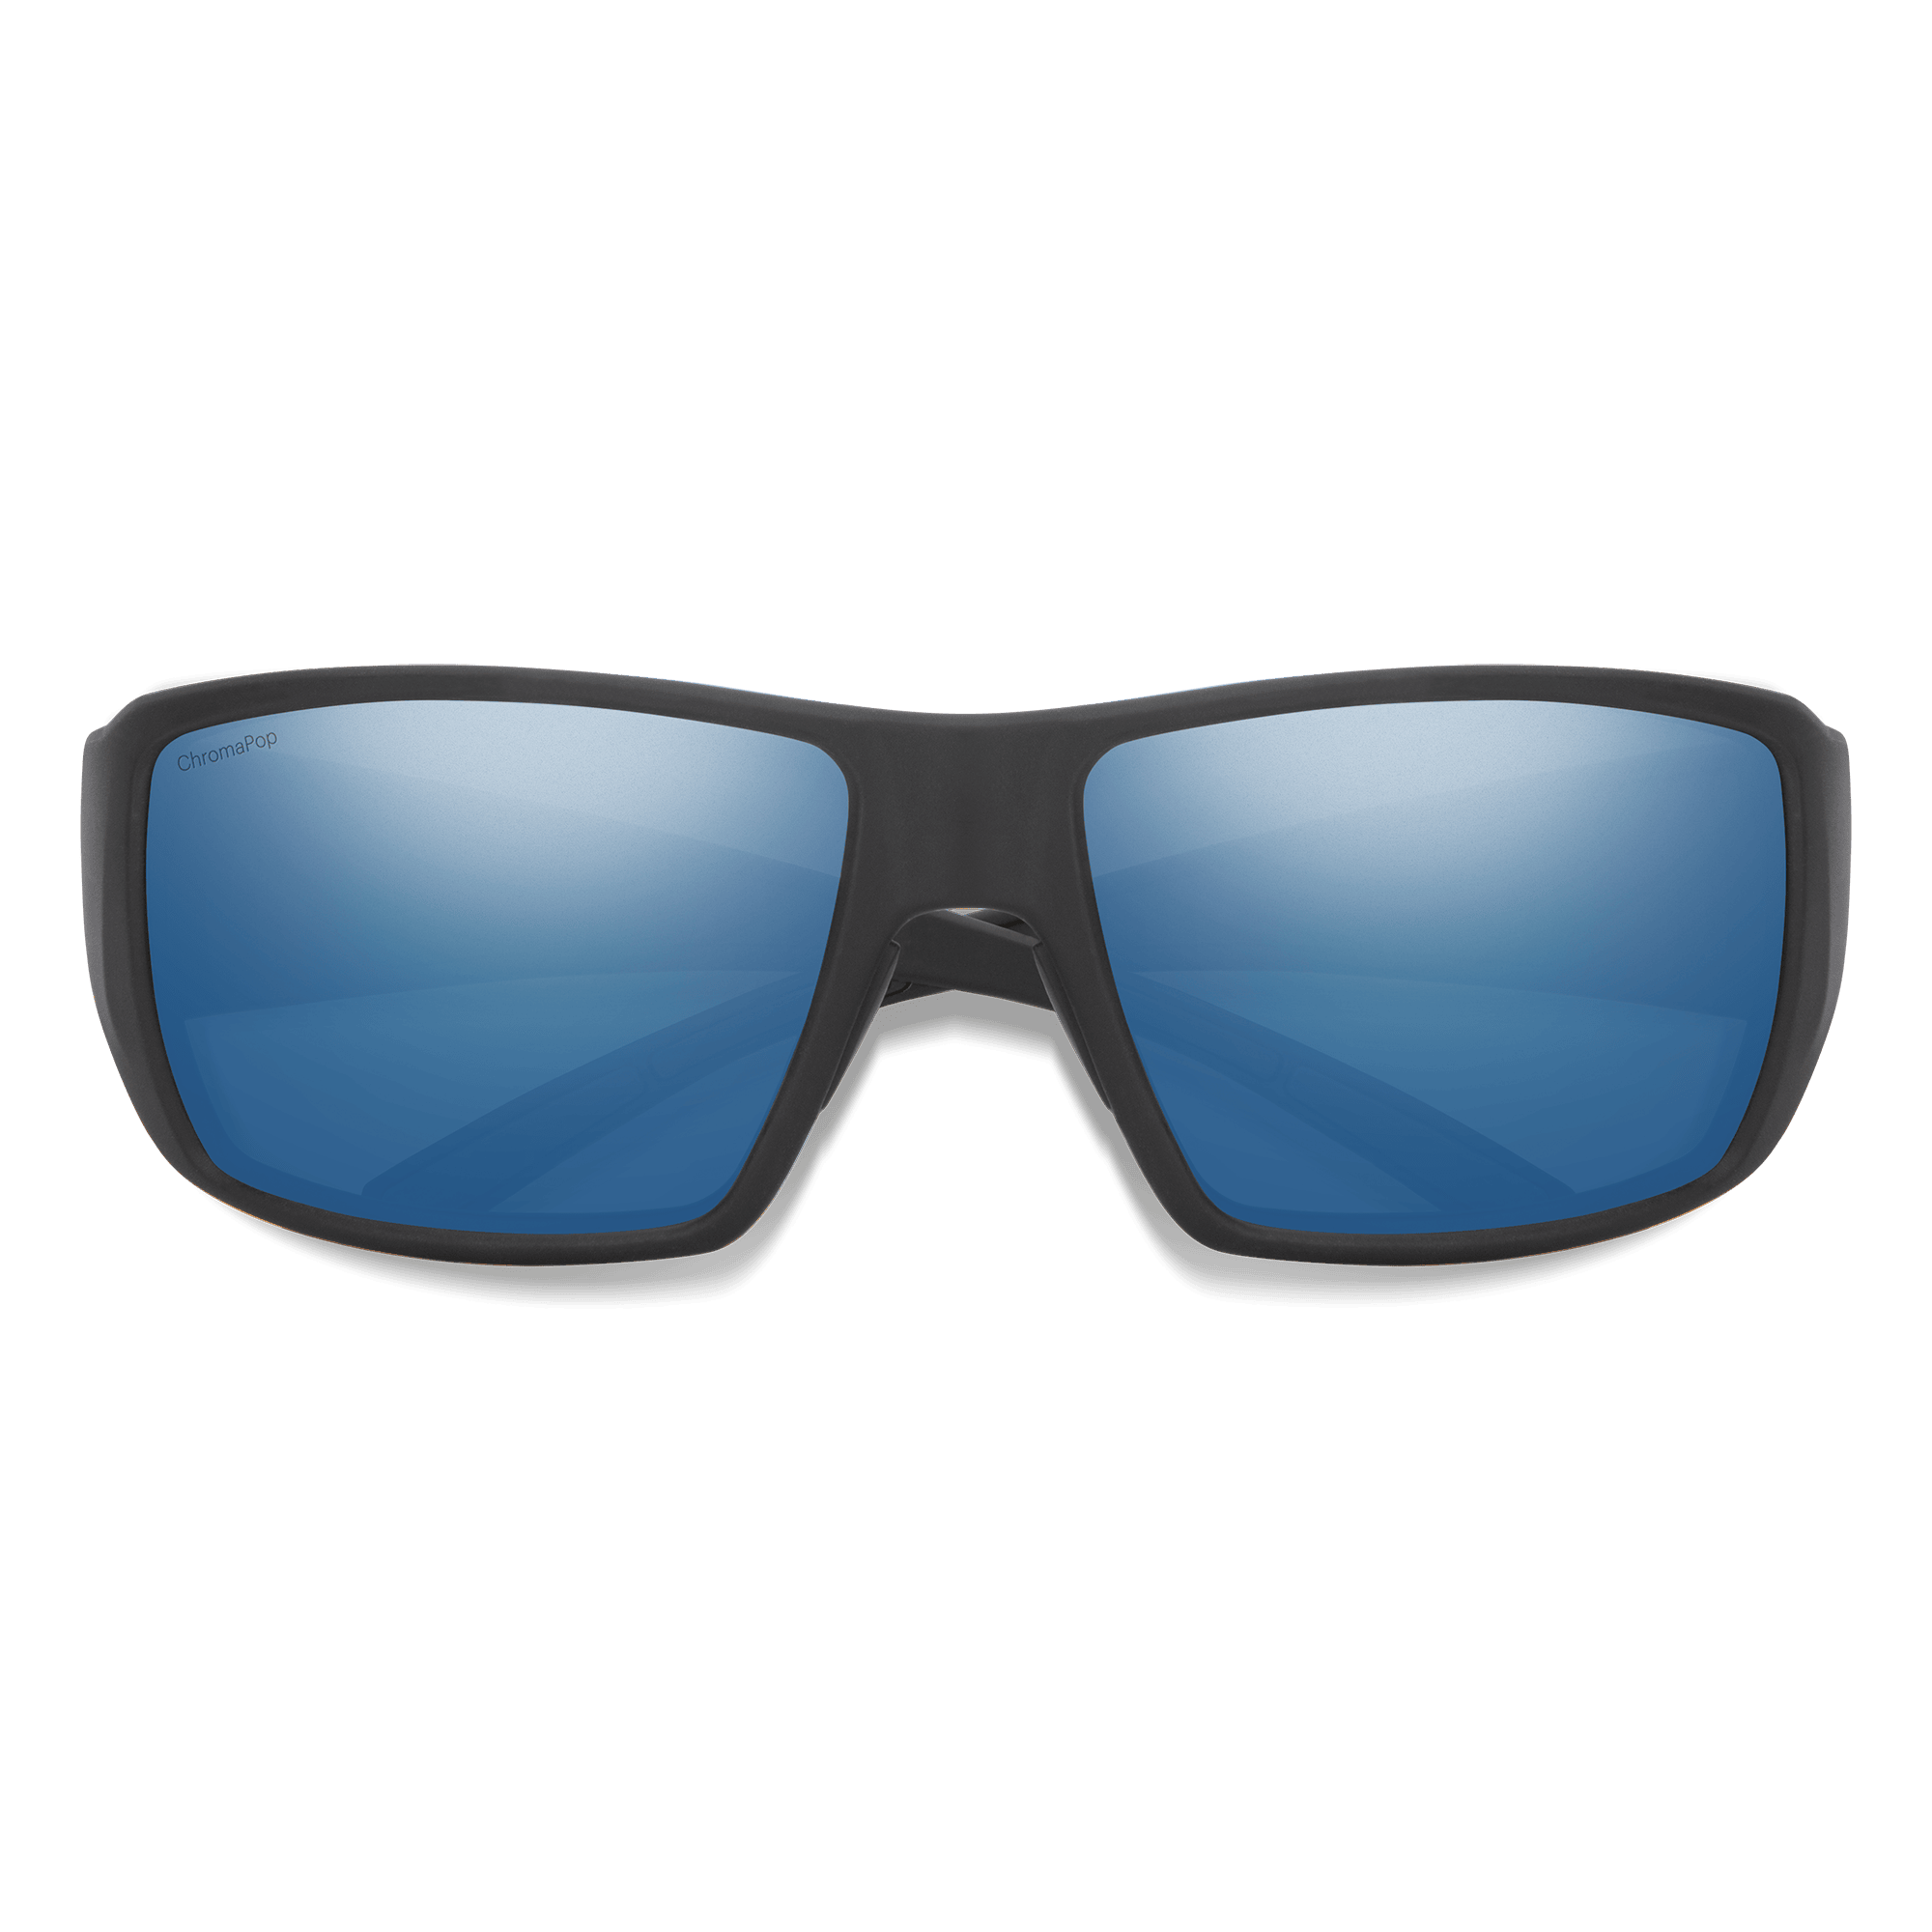 Guide's Choice, Matte Black + ChromaPop Polarized Blue Mirror Lens, hi-res